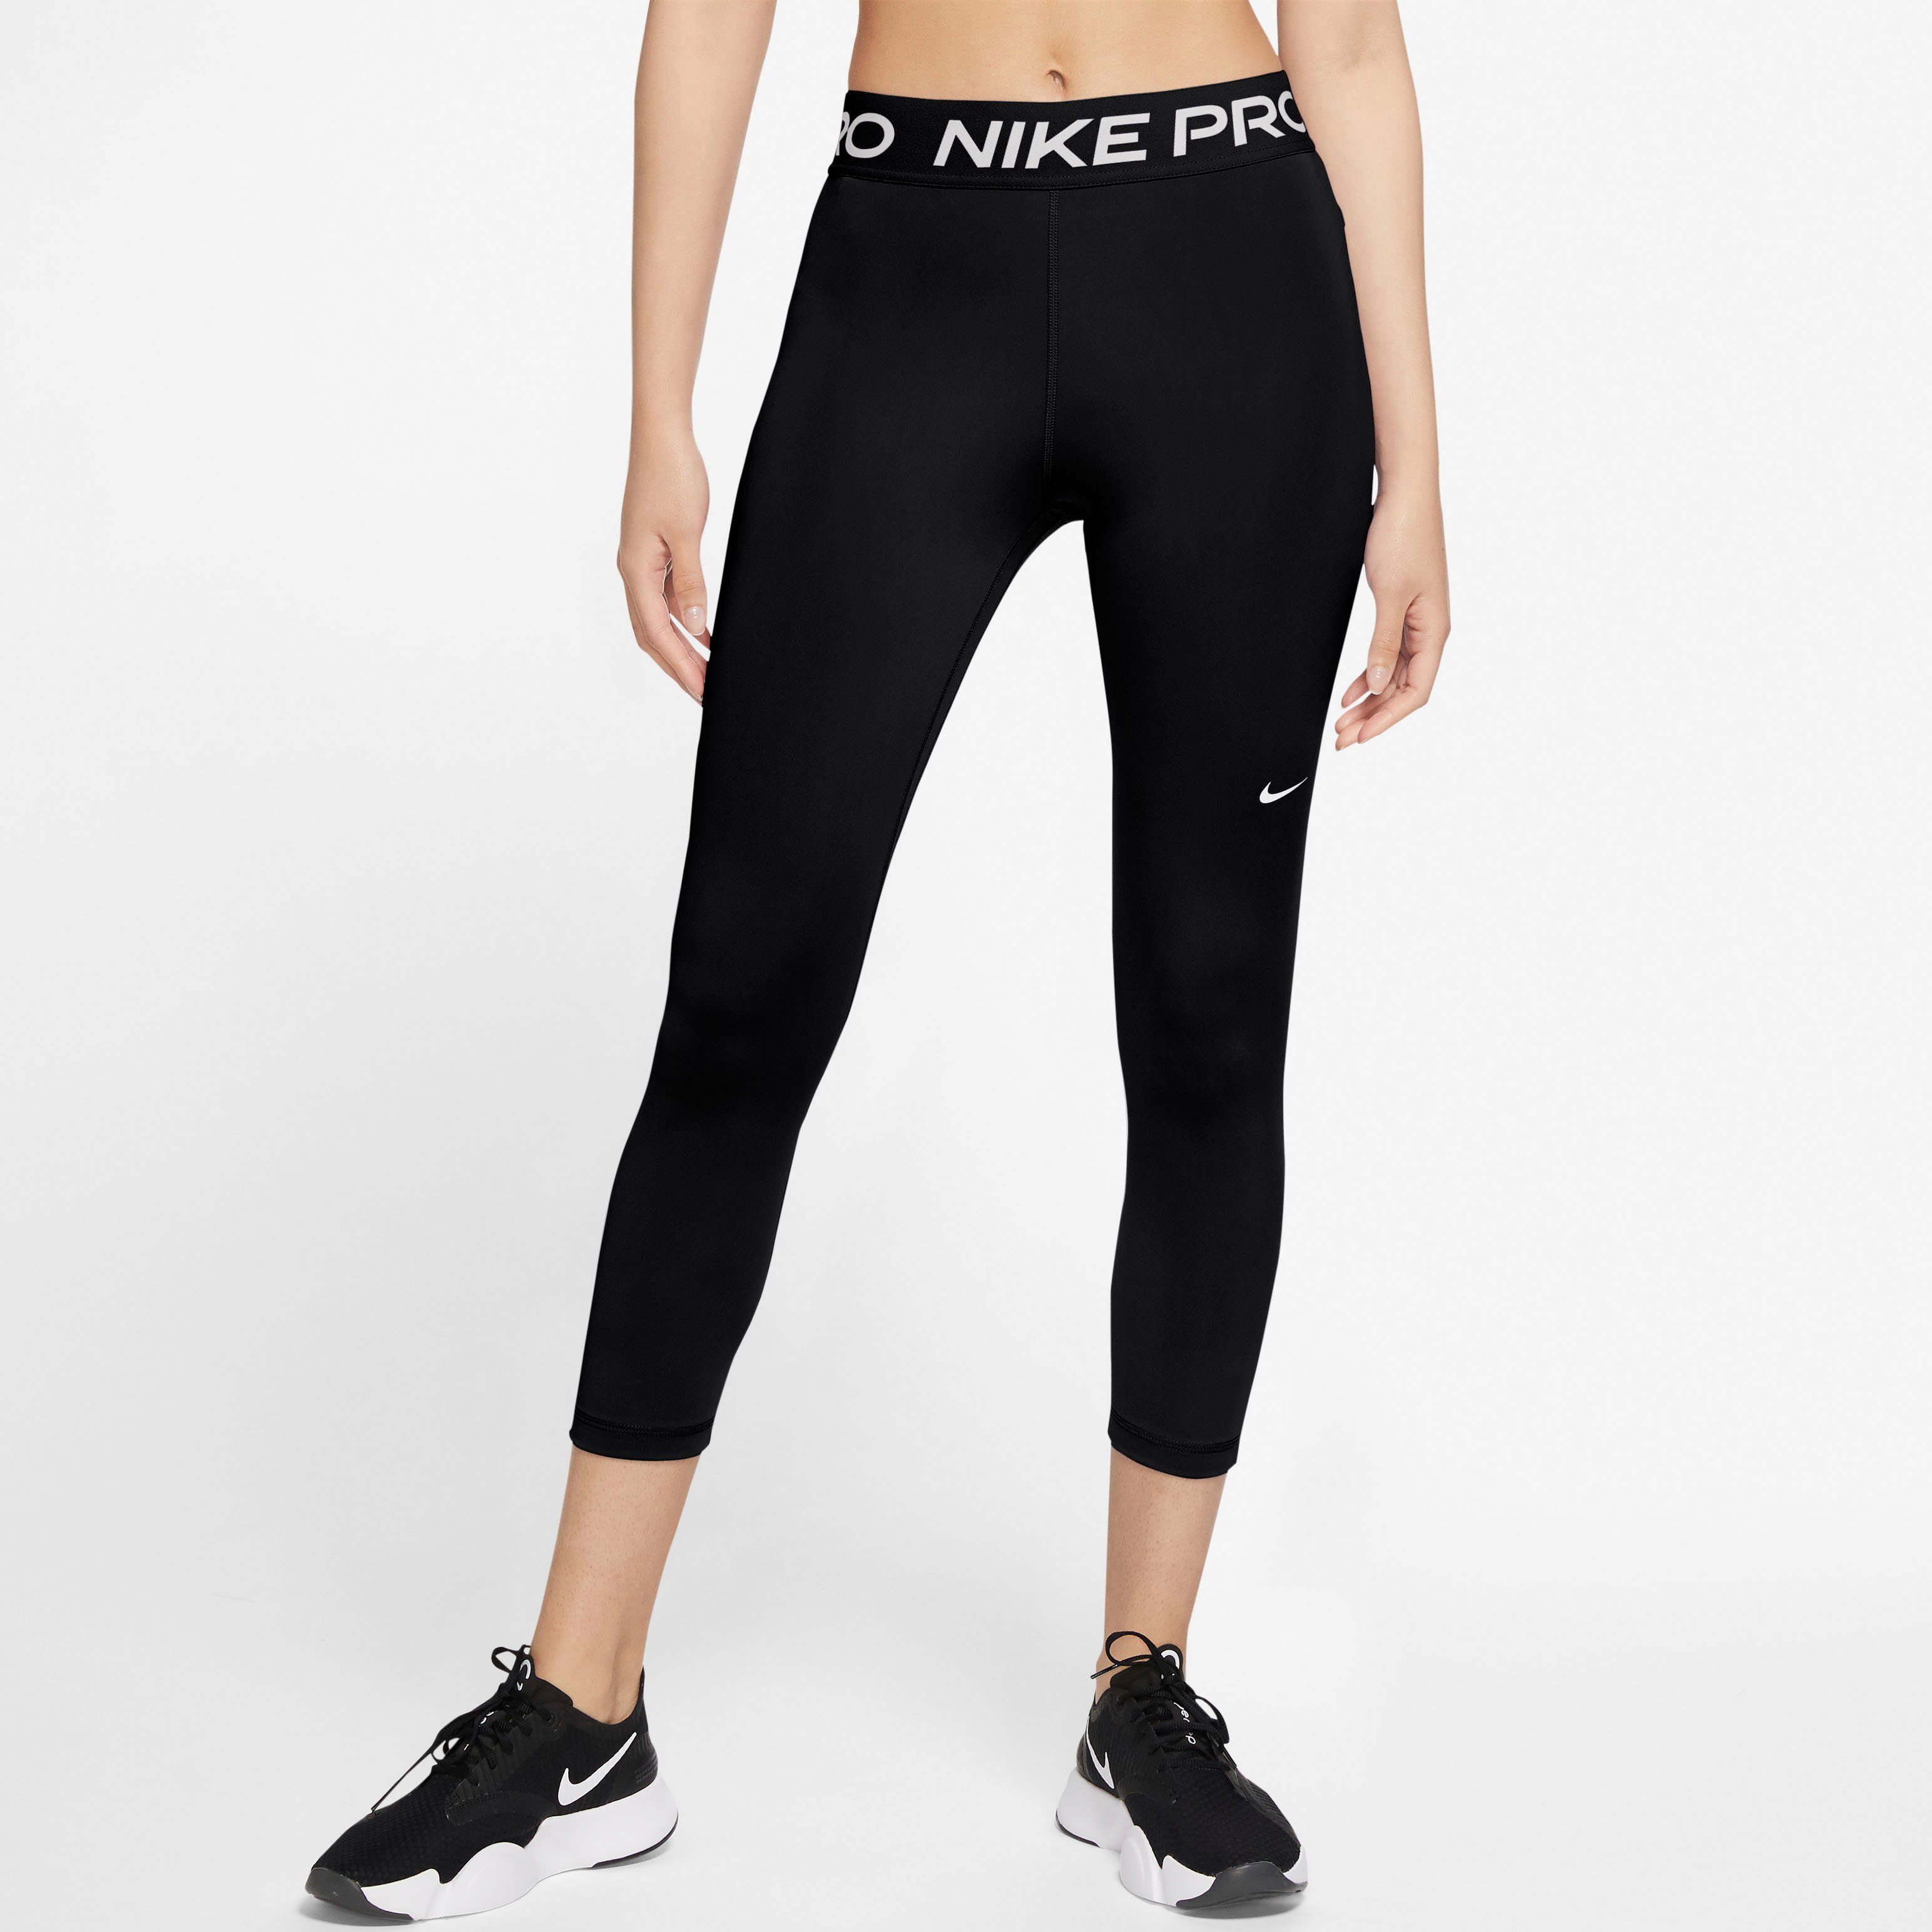 schwarz Women's Pro Mid-Rise Trainingstights Nike Crop Leggings